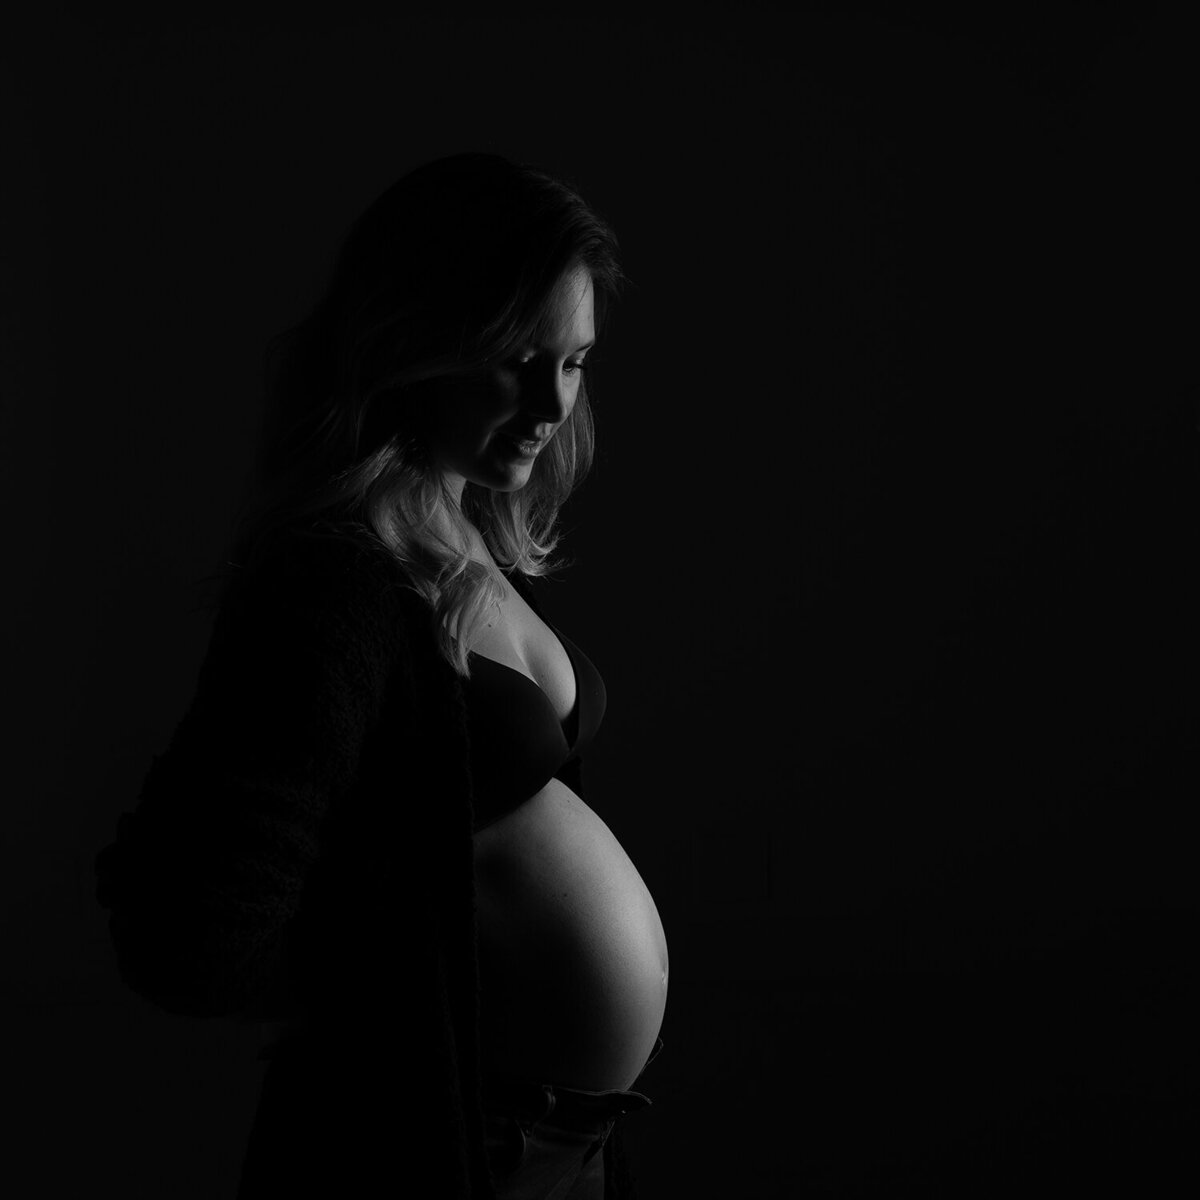 Zwangerschapsfotografie, buikfoto zwarte achtergrond